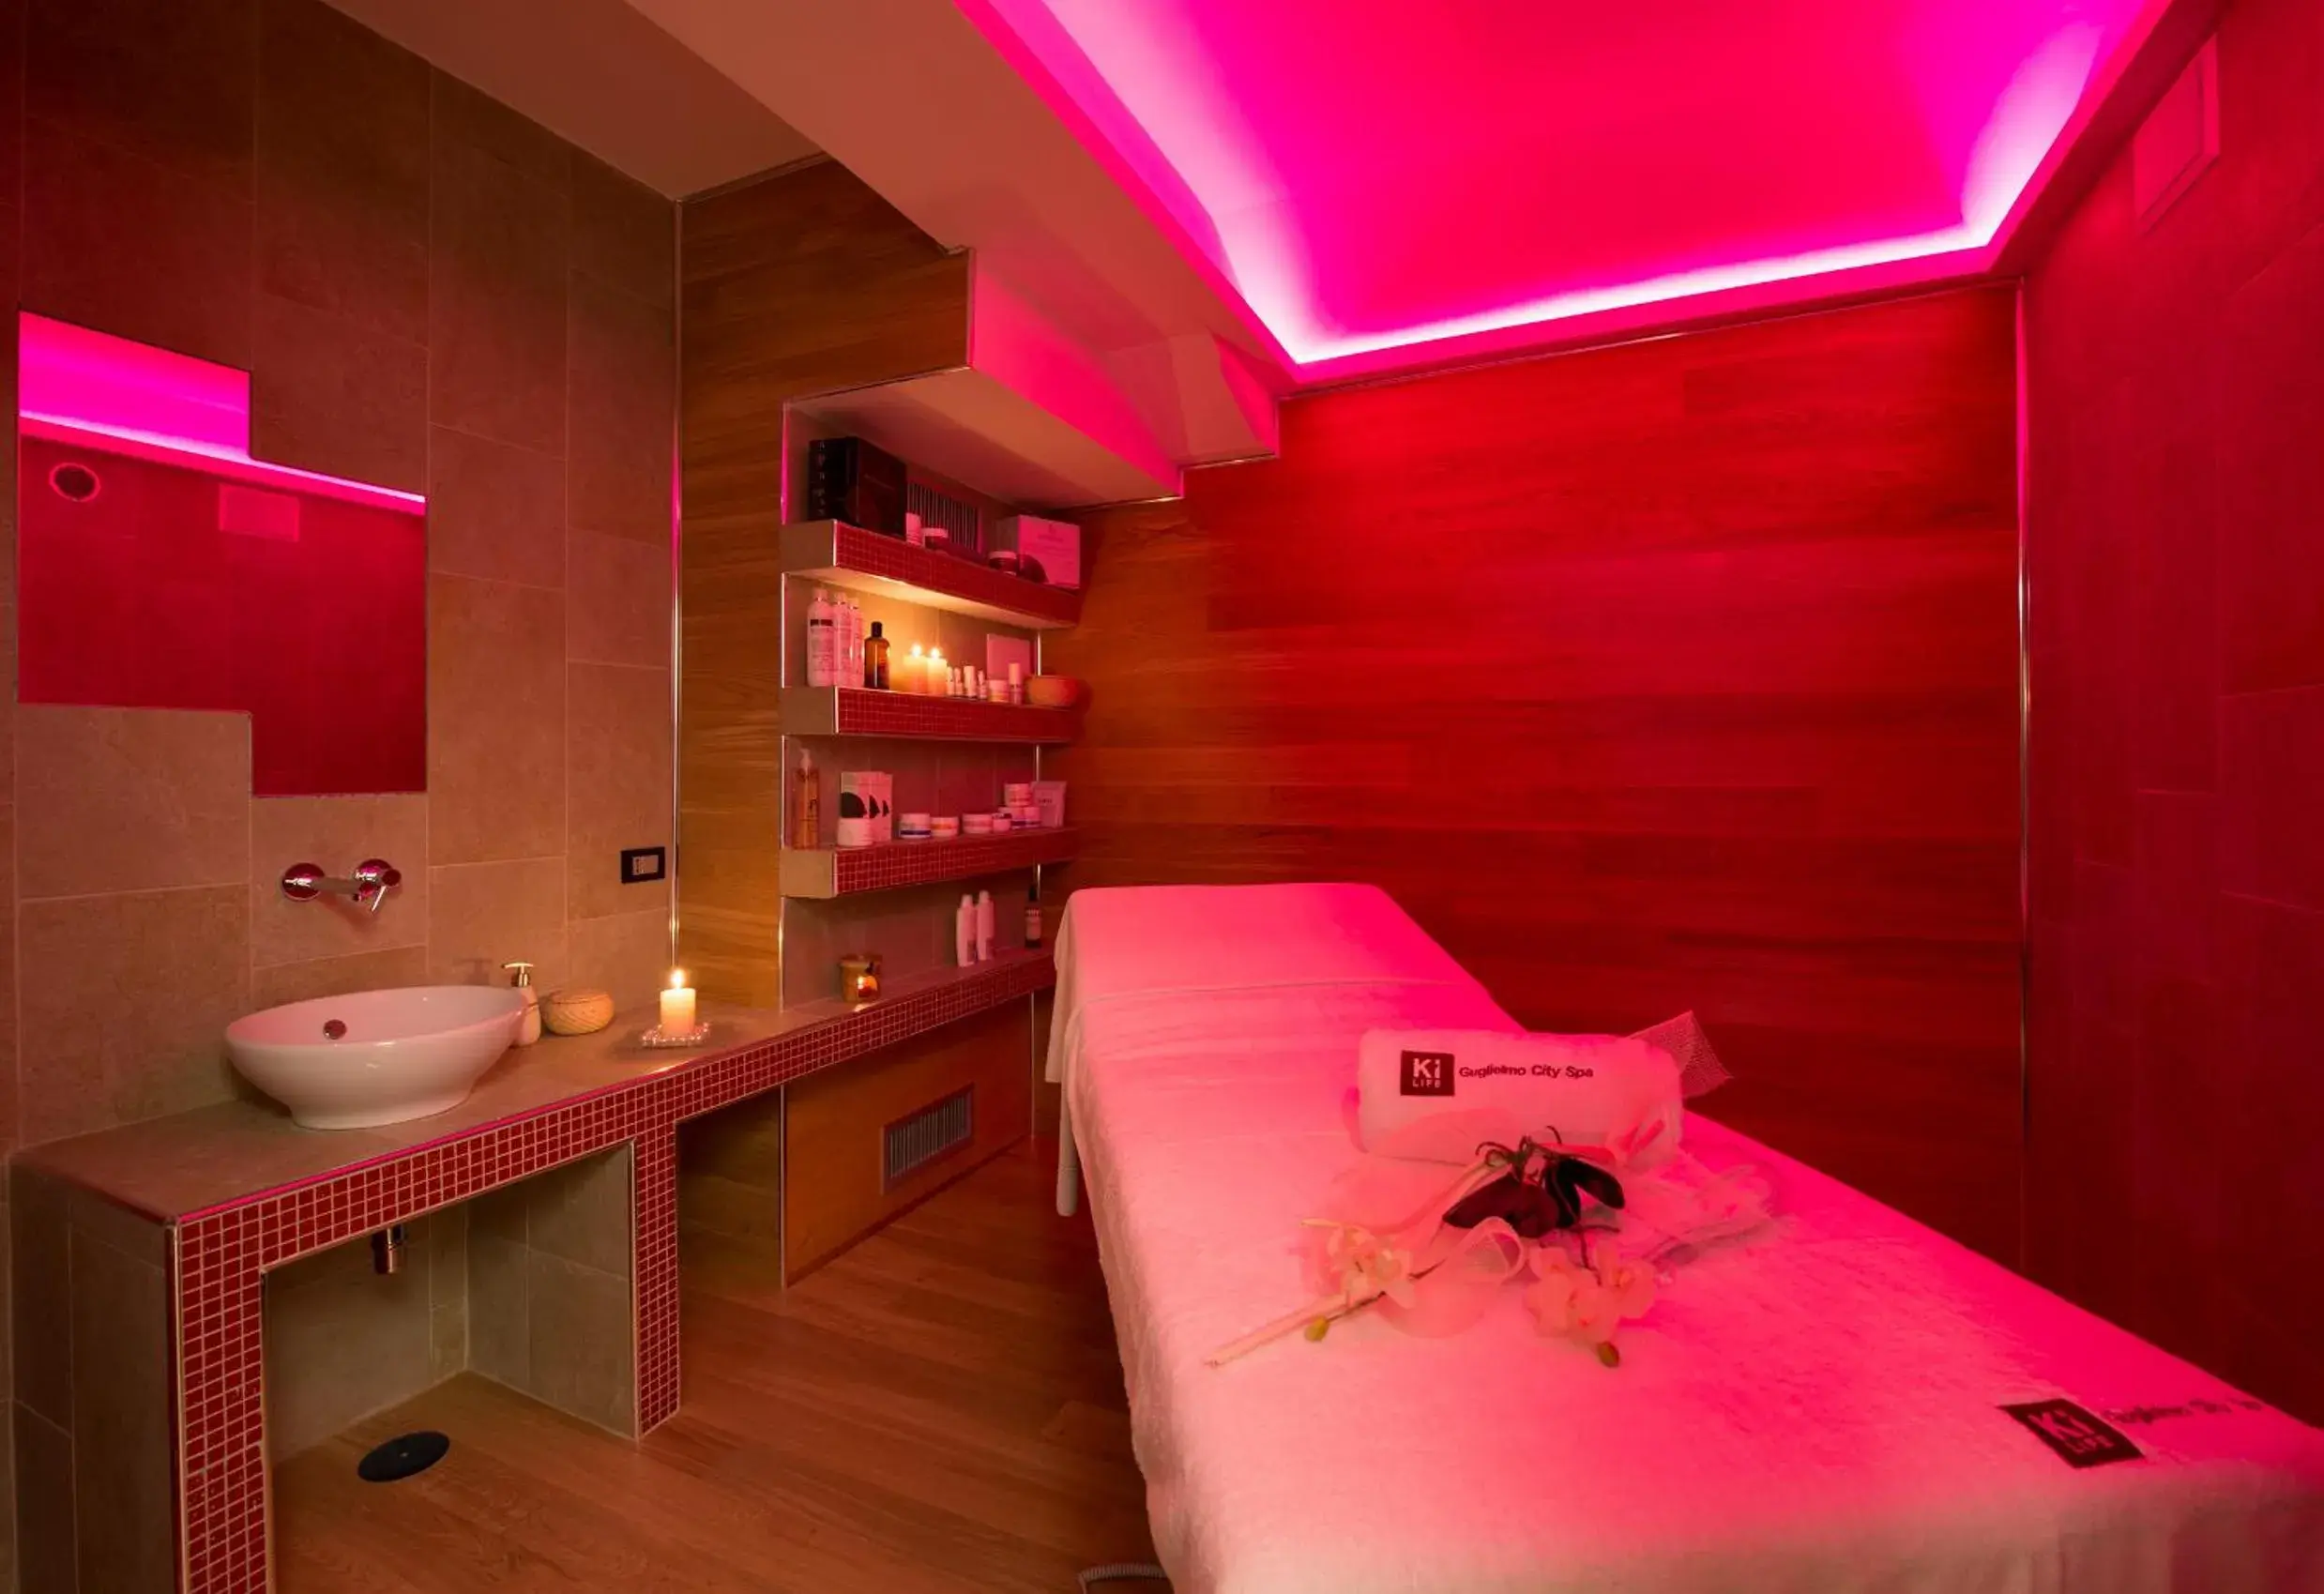 Spa and wellness centre/facilities, Bathroom in Hotel Guglielmo